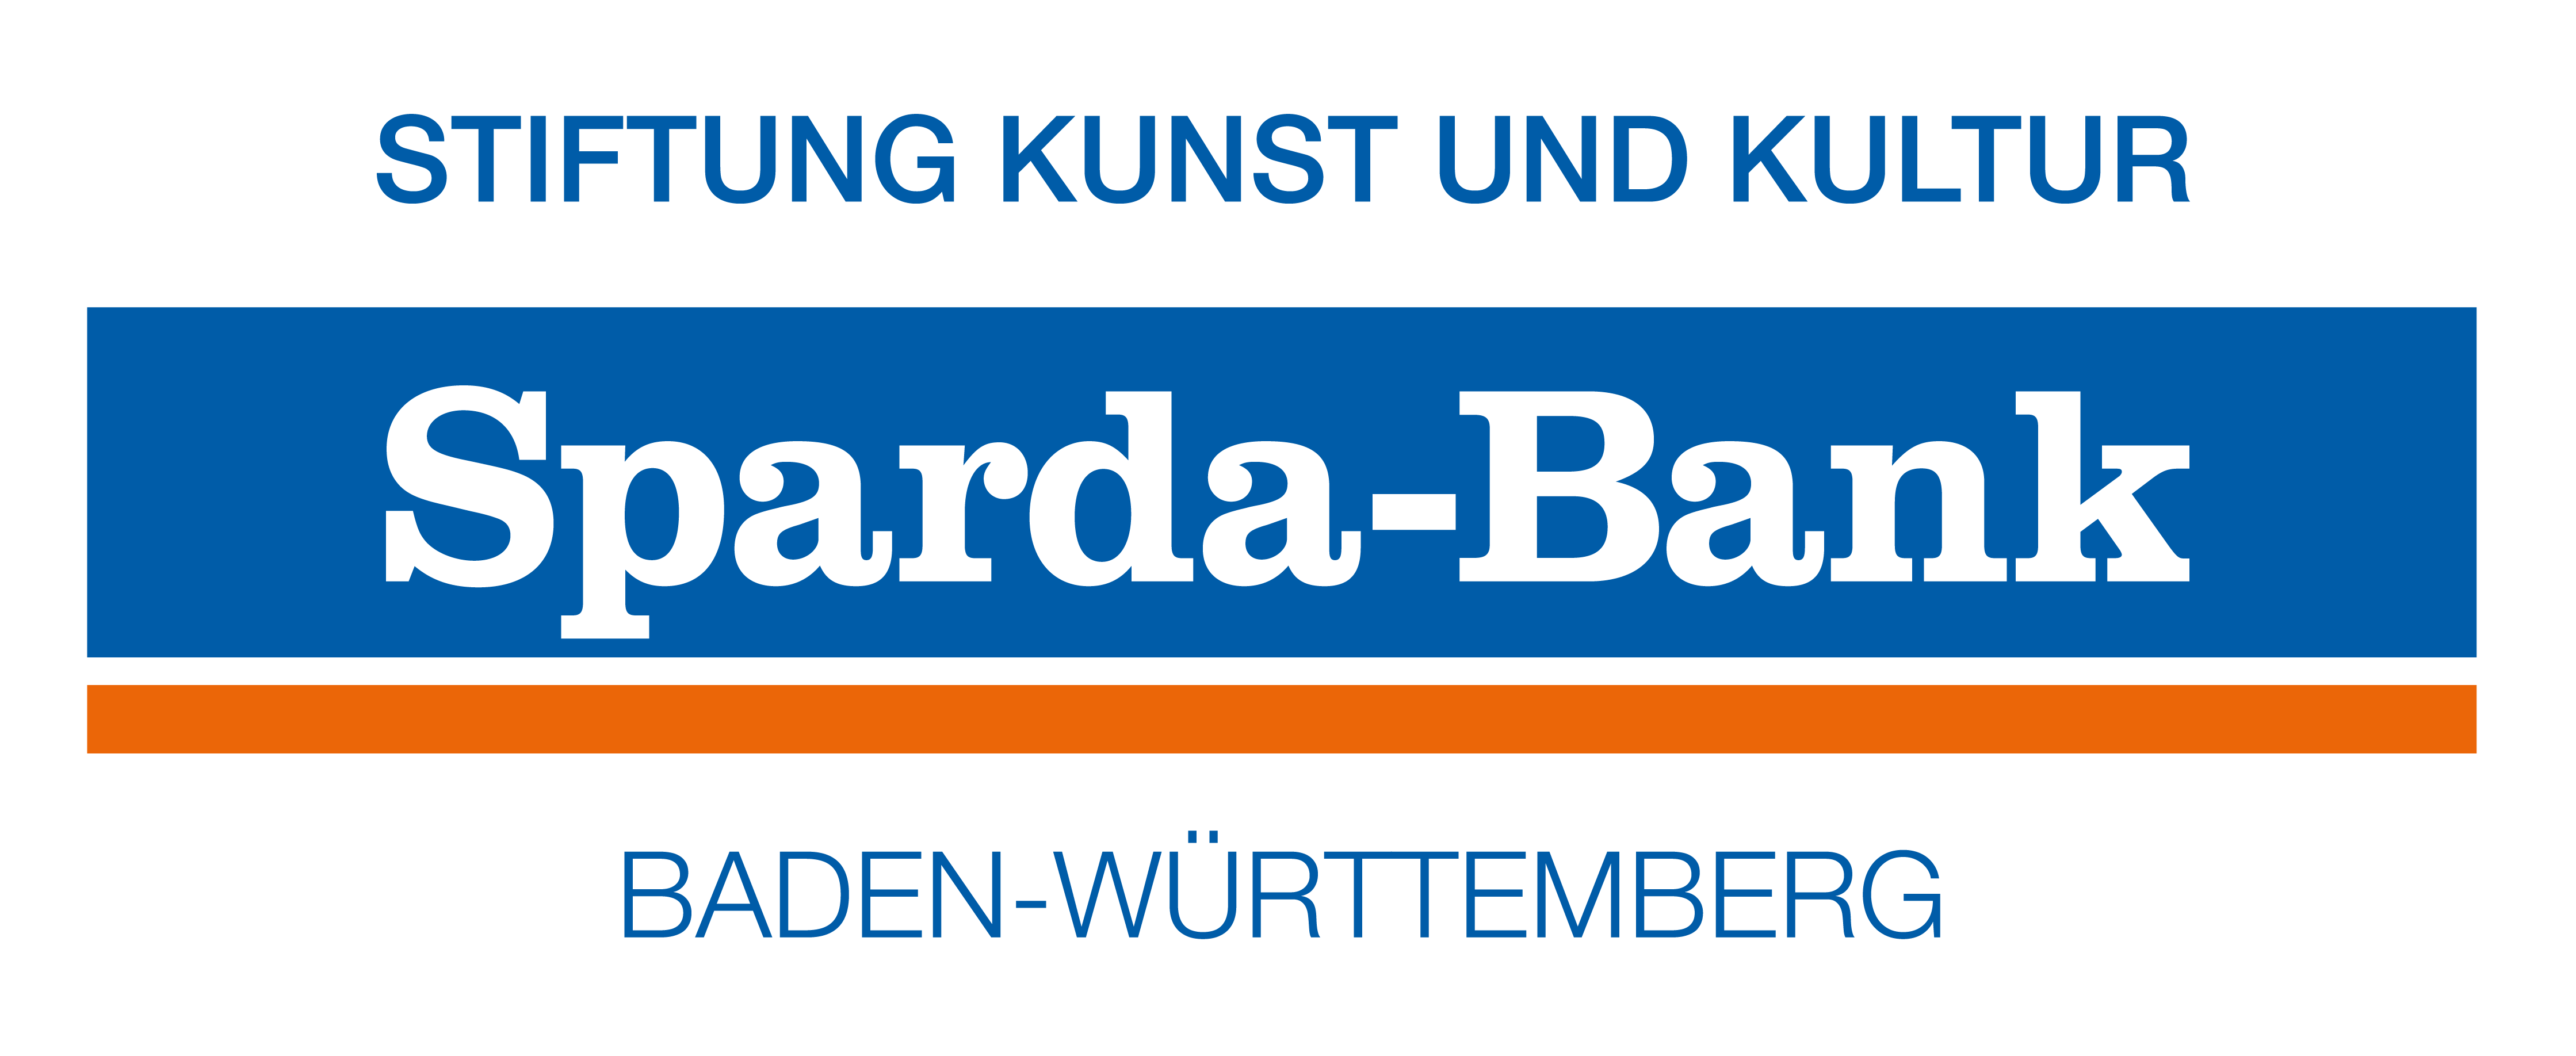 Stiftung Kunst und Kultur Sparda Bank Baden-Württemberg